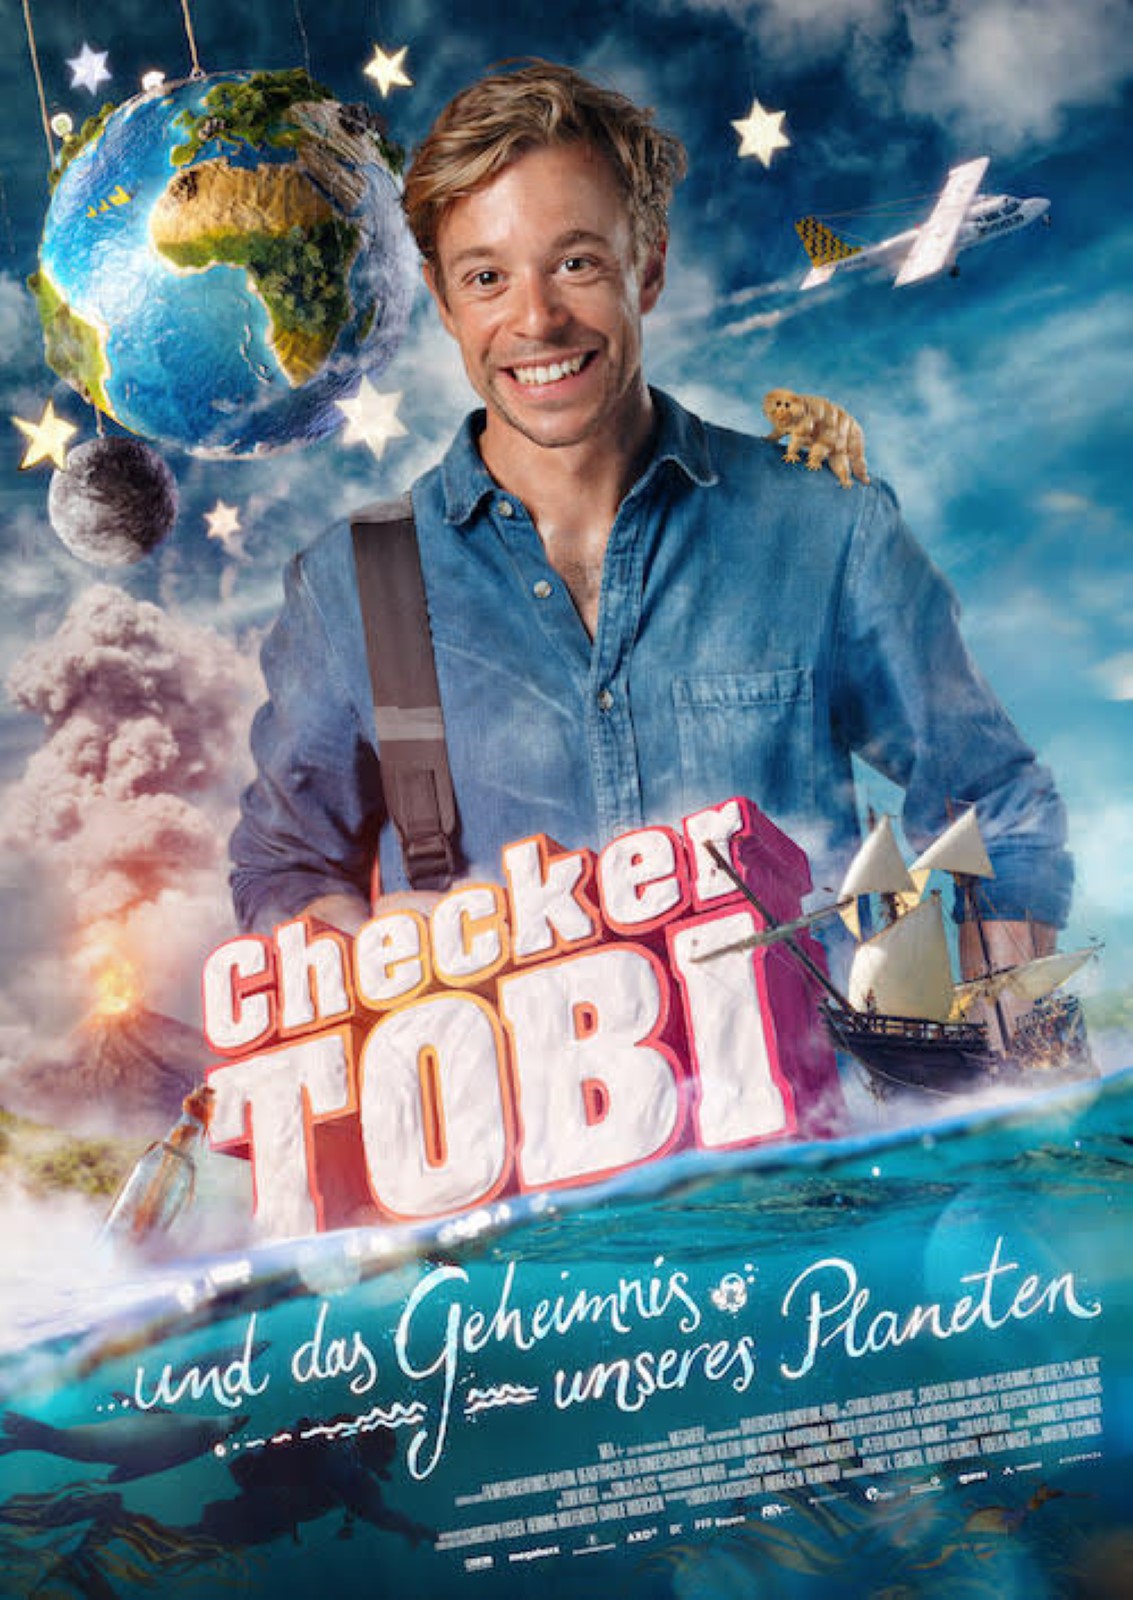 Checker Tobi Film Kino